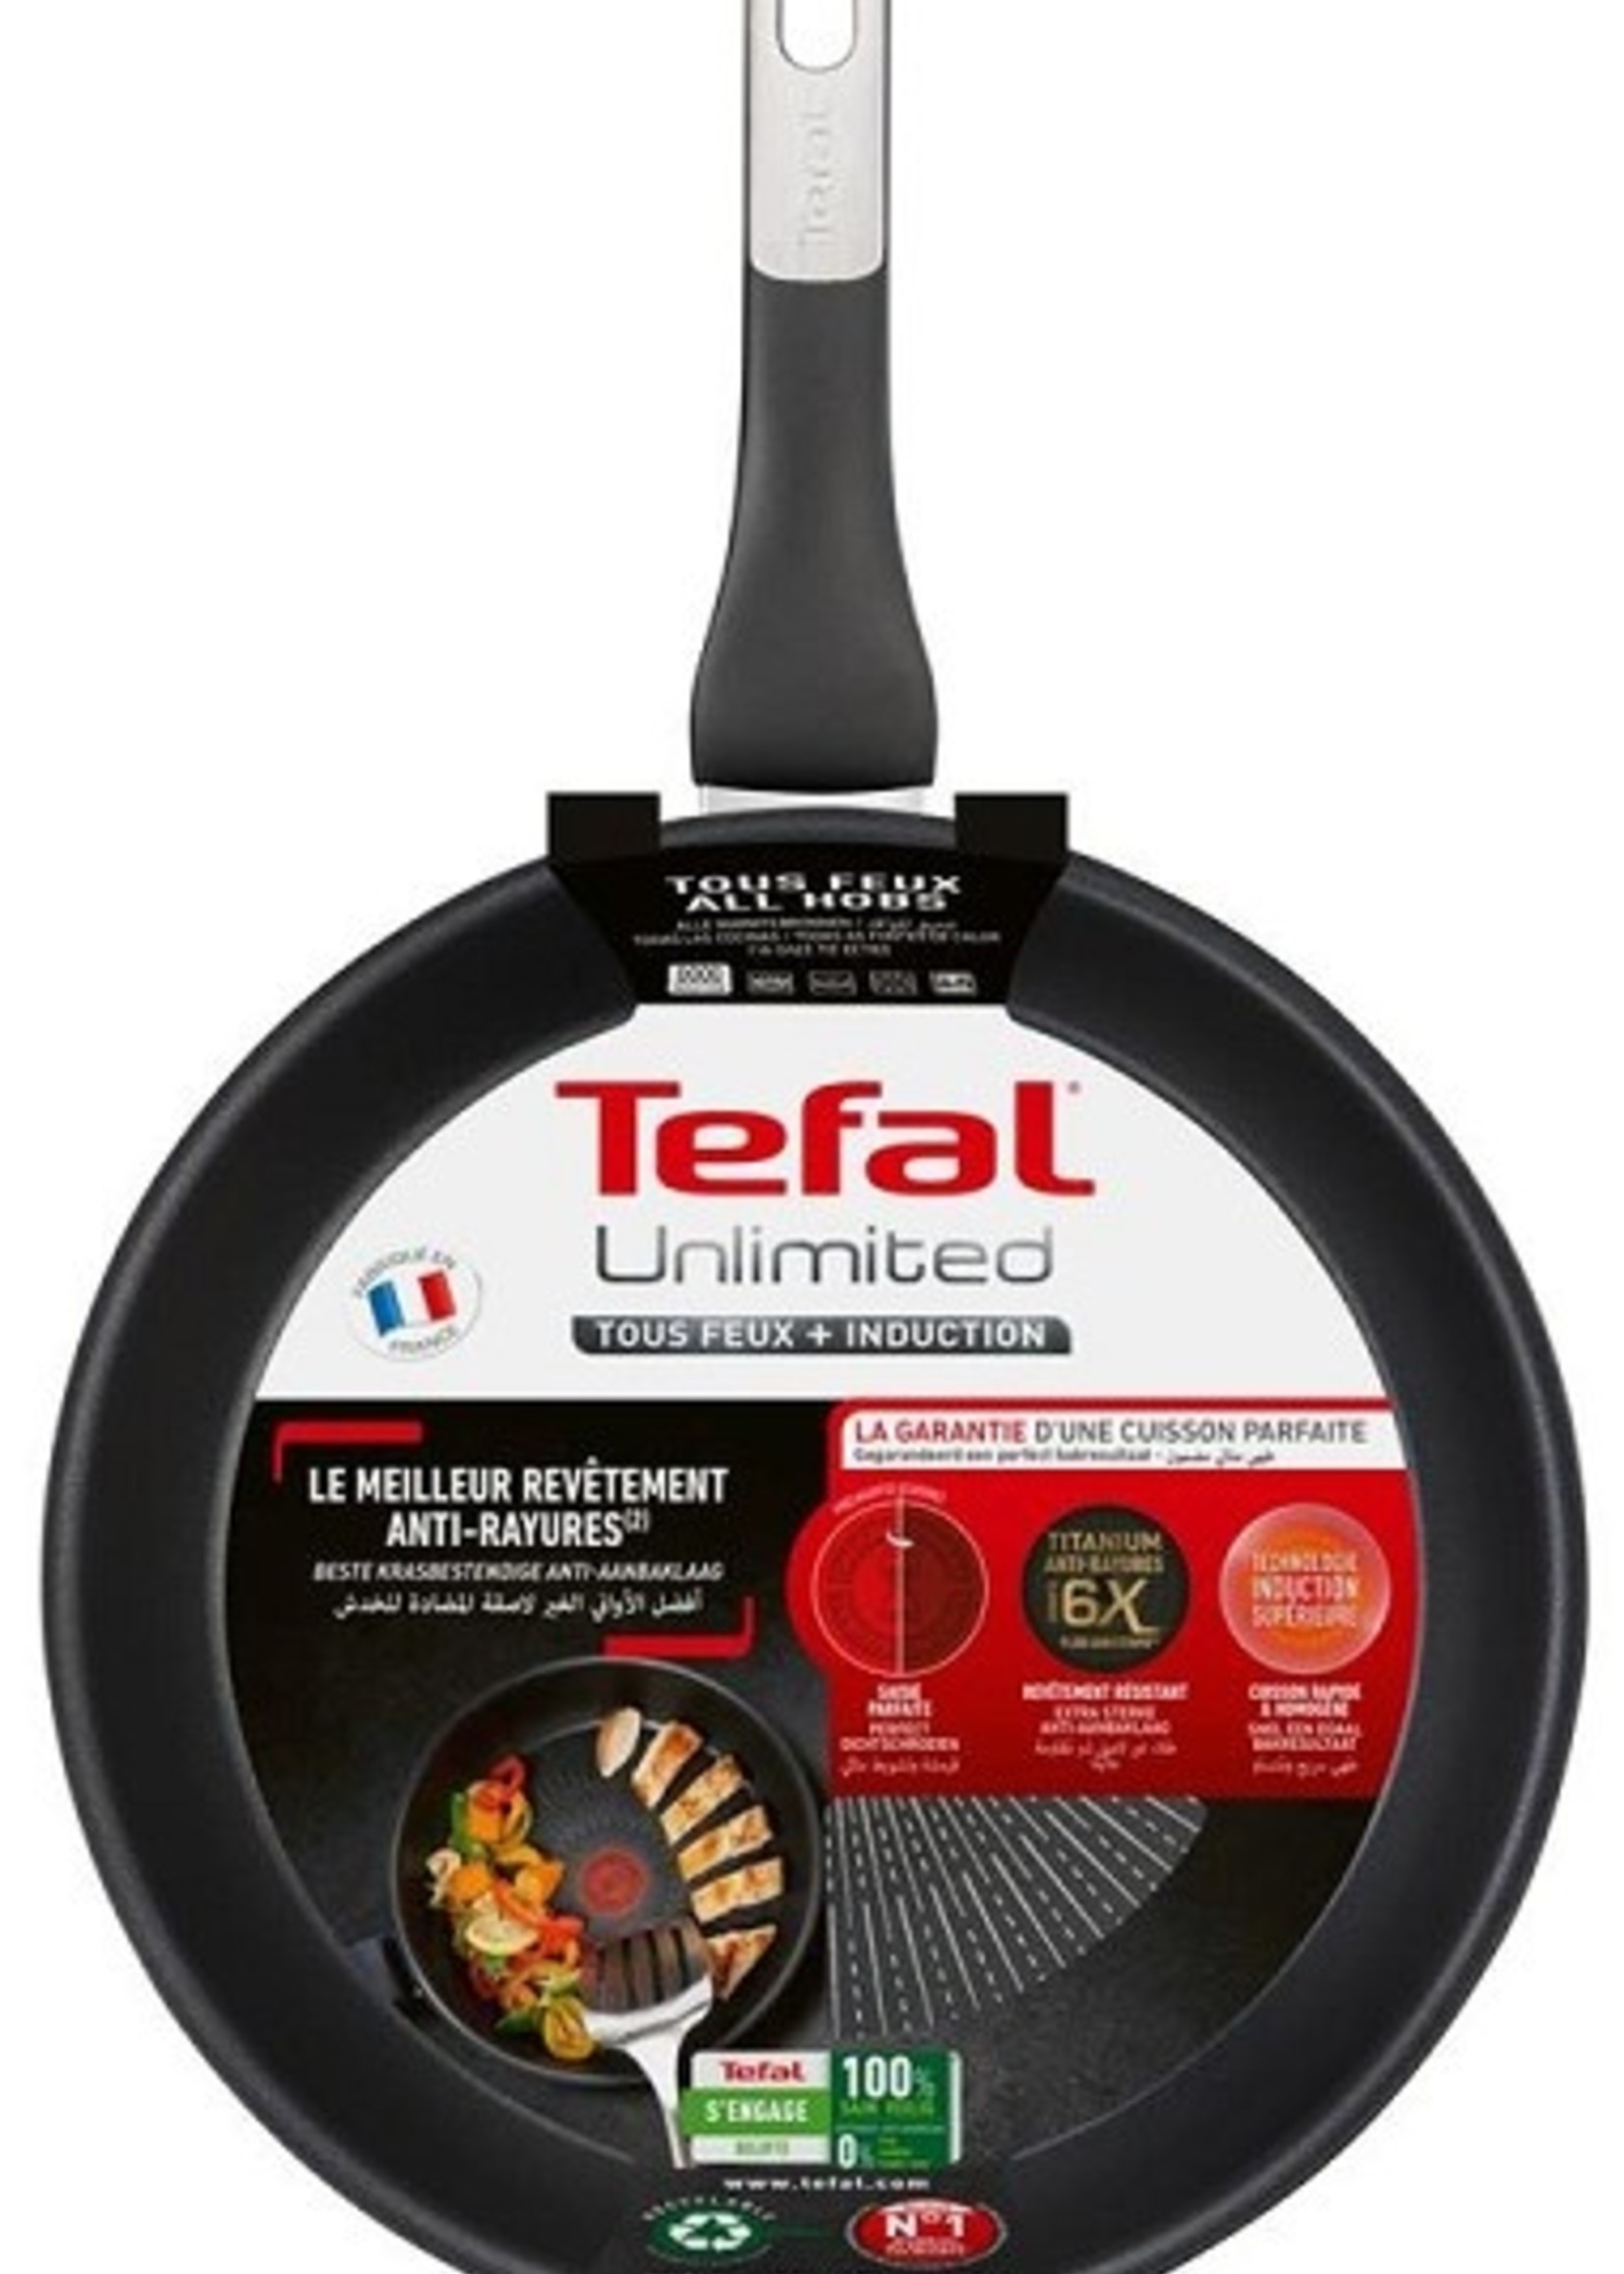 Tefal Unlimited Koekenpan 20cm van aluminium met titainium coating, geschikt voor alle warmtebronnen, inclusief inductie